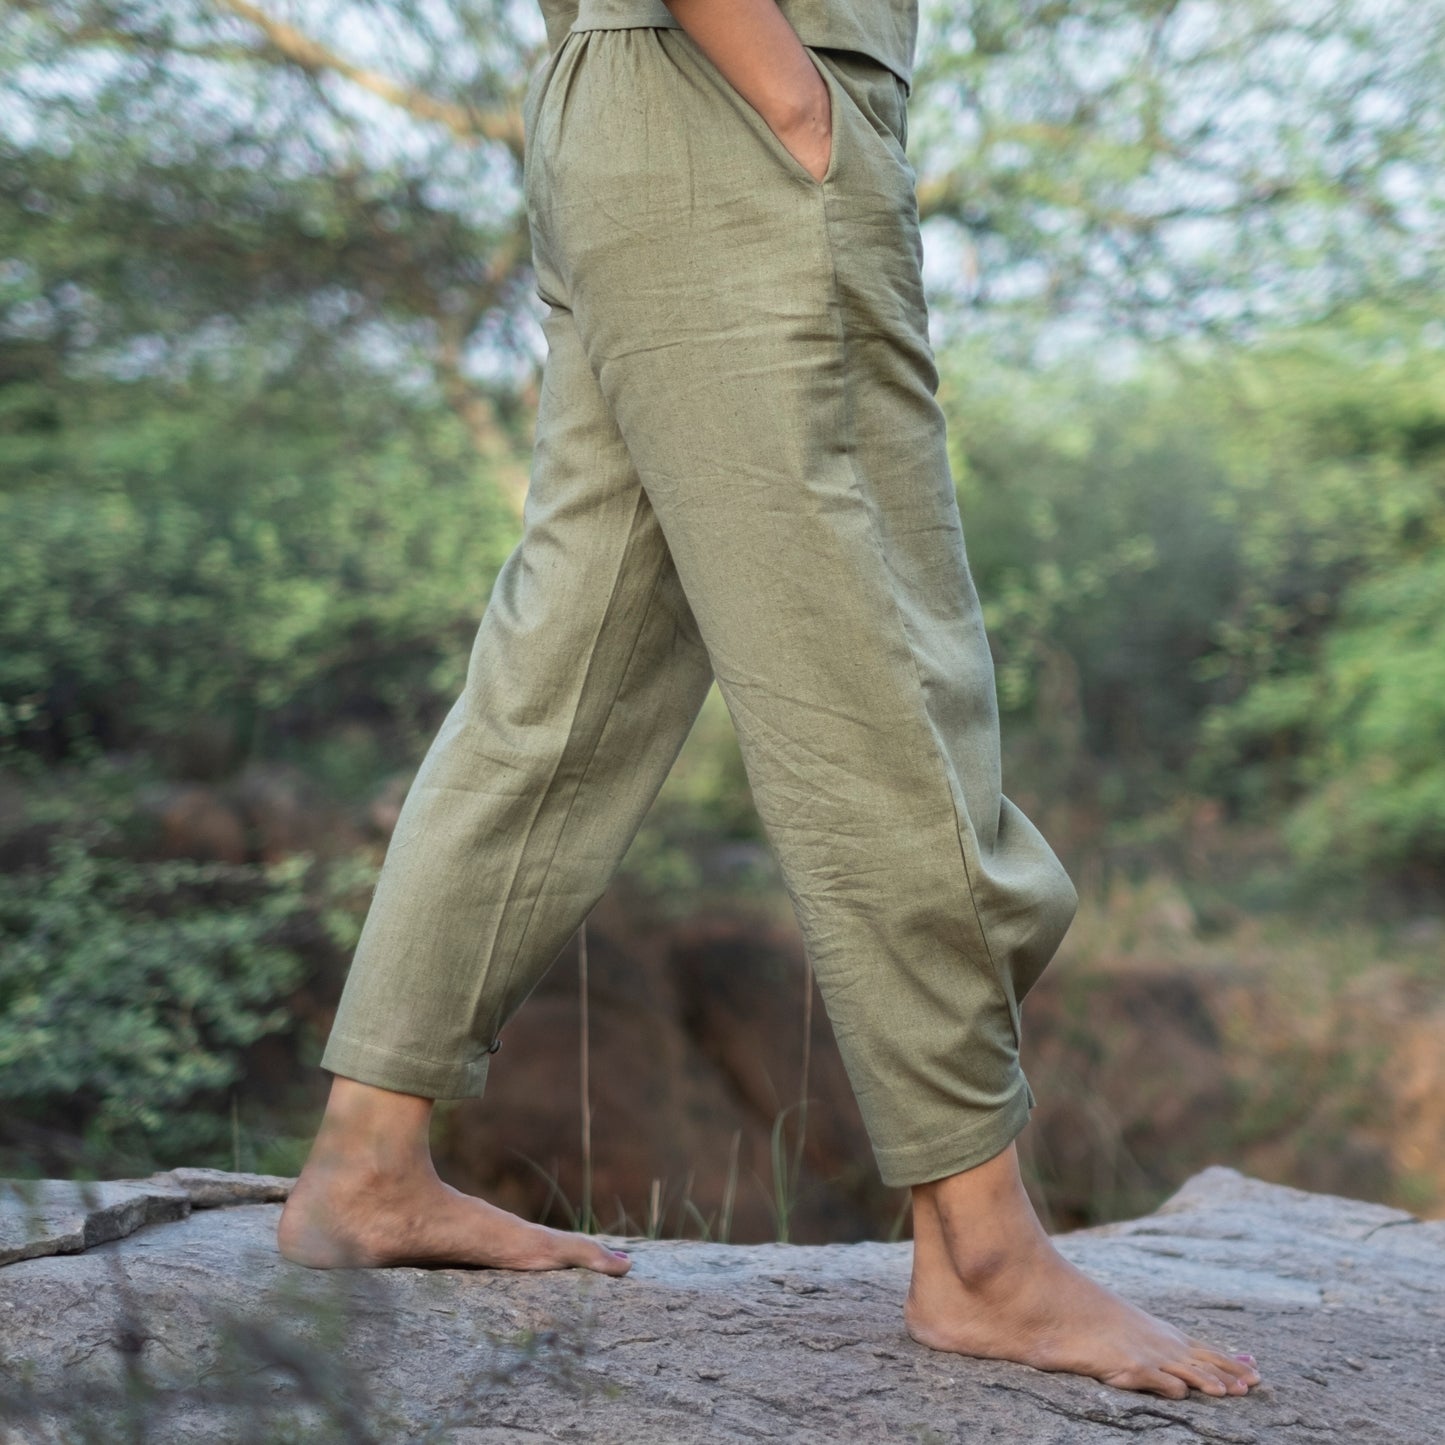 Dharma Yoga Top and Pant Set Green